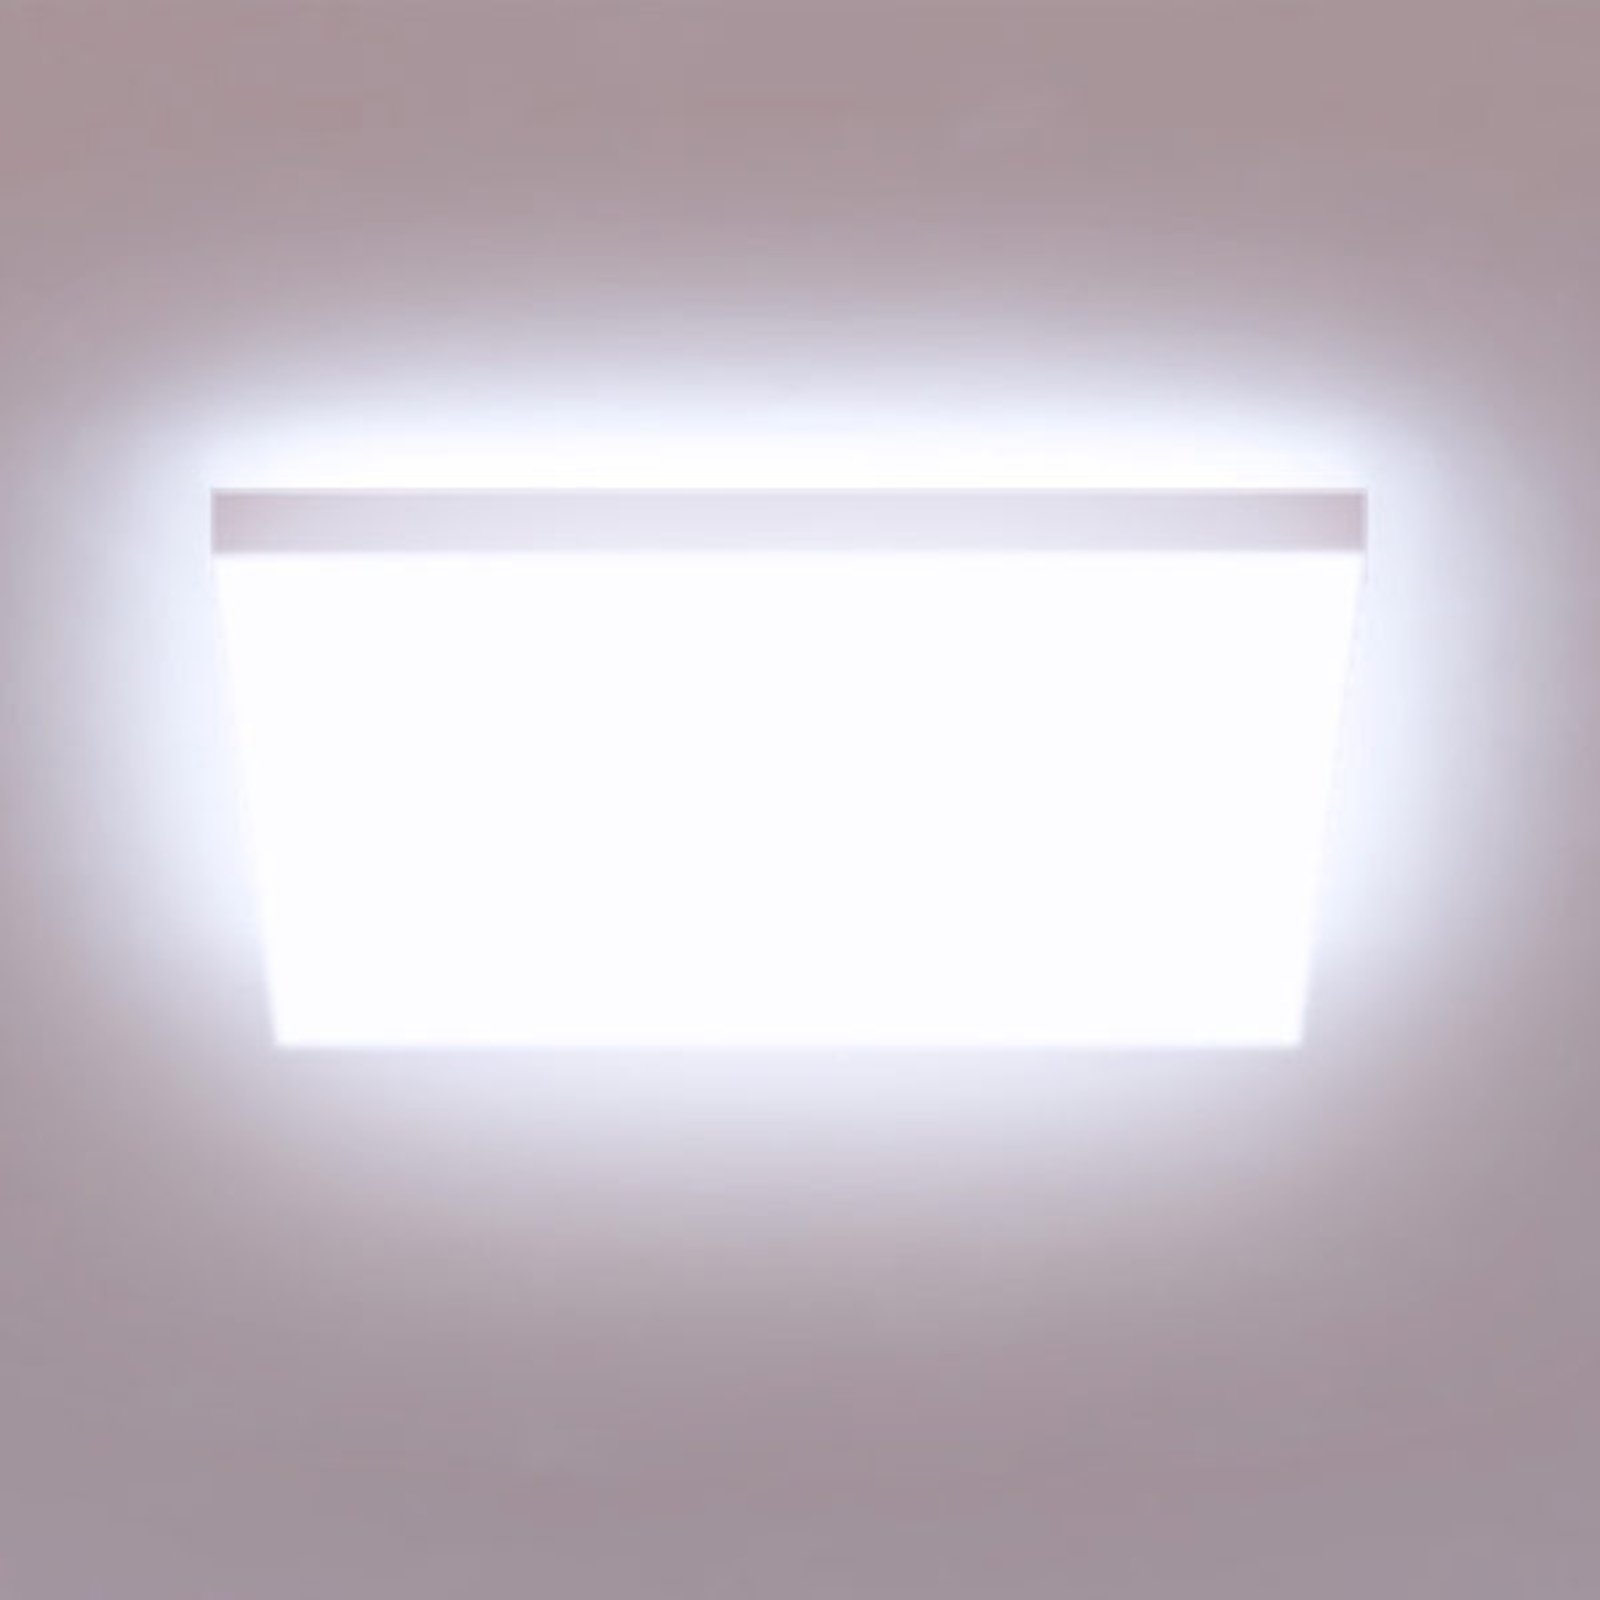 Müller Licht tint pannello LED Loris, 45x45cm